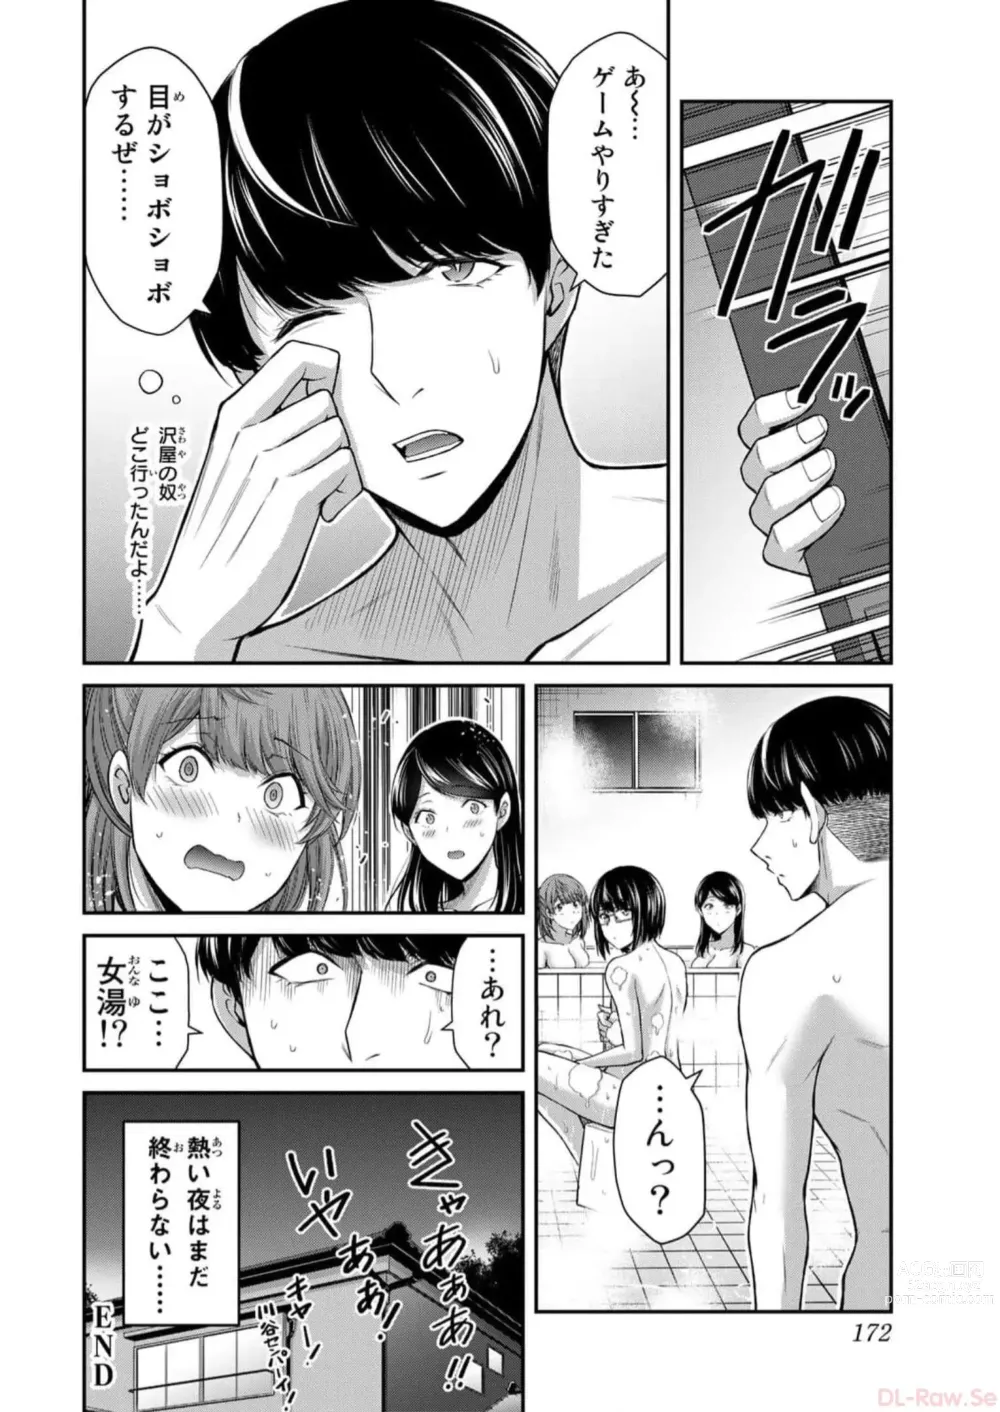 Page 382 of doujinshi Guilty Circle